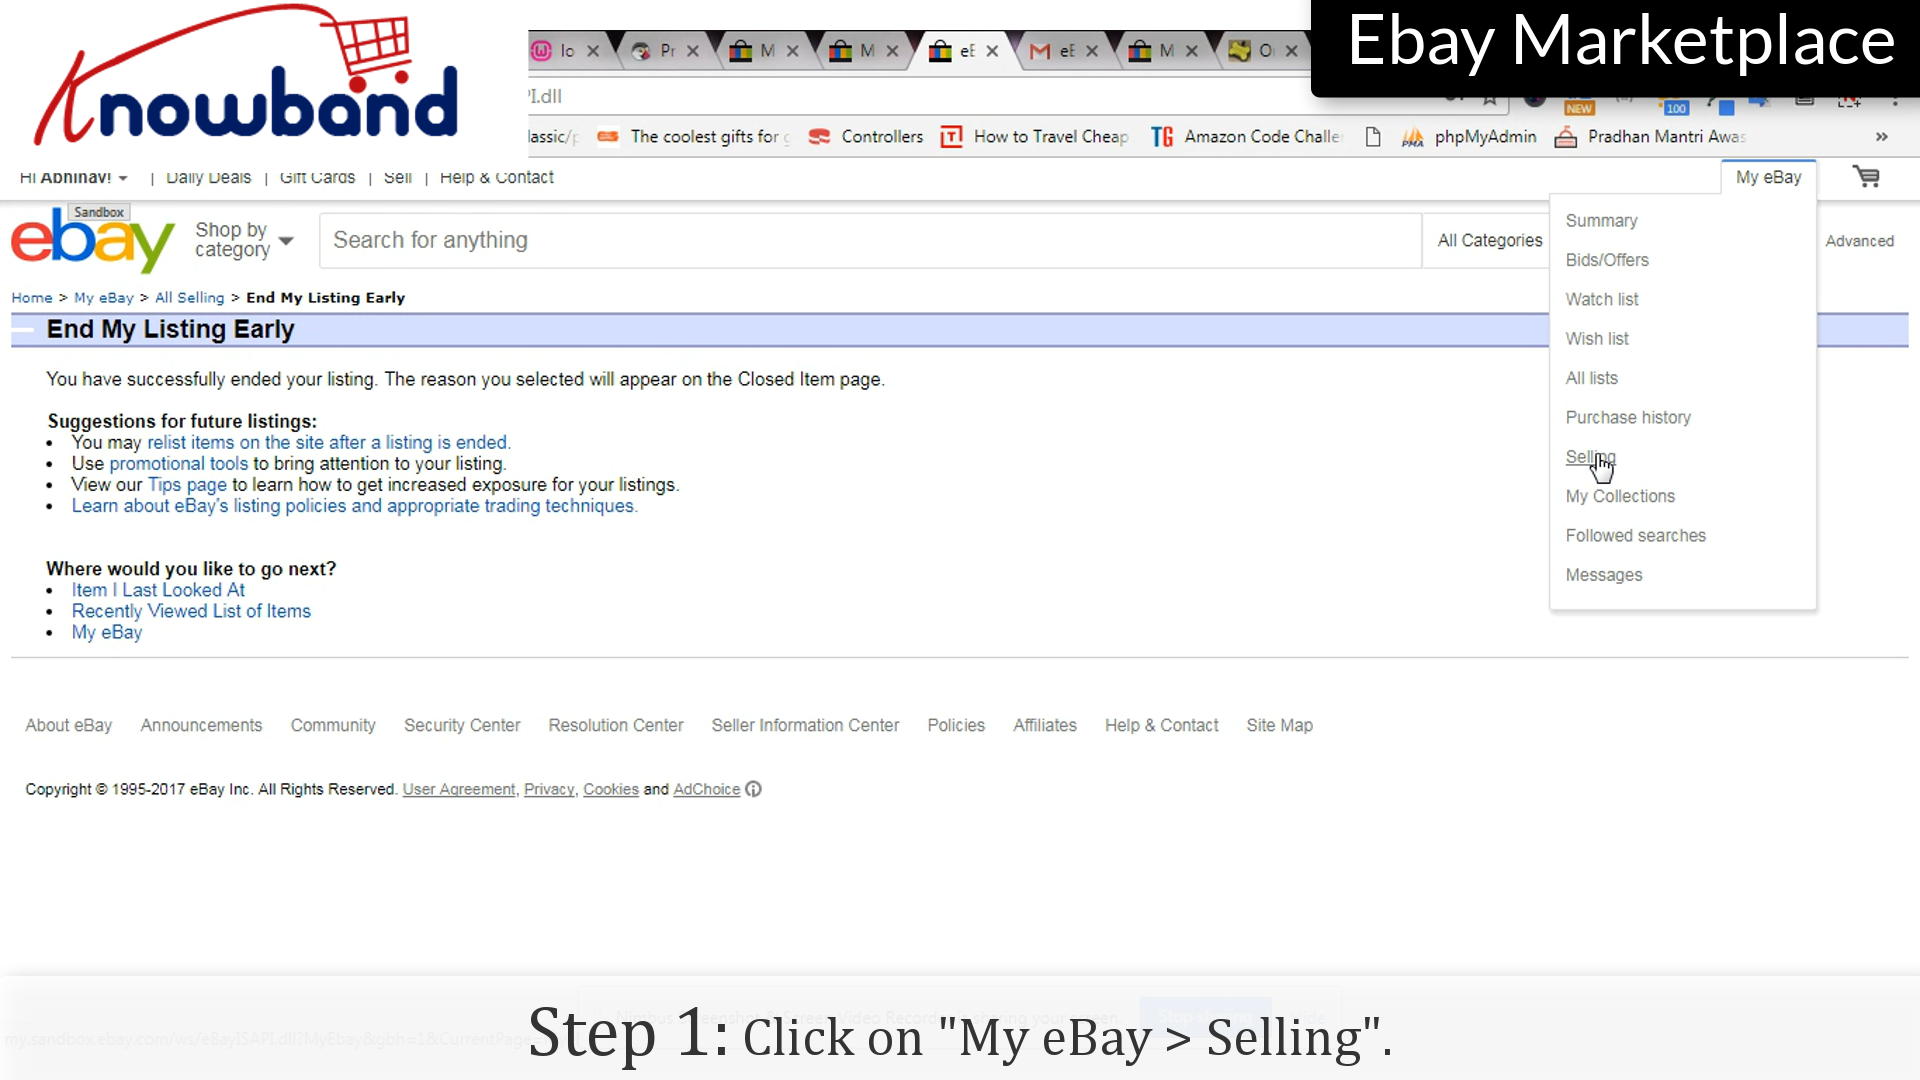 Sprzedaż | eBay